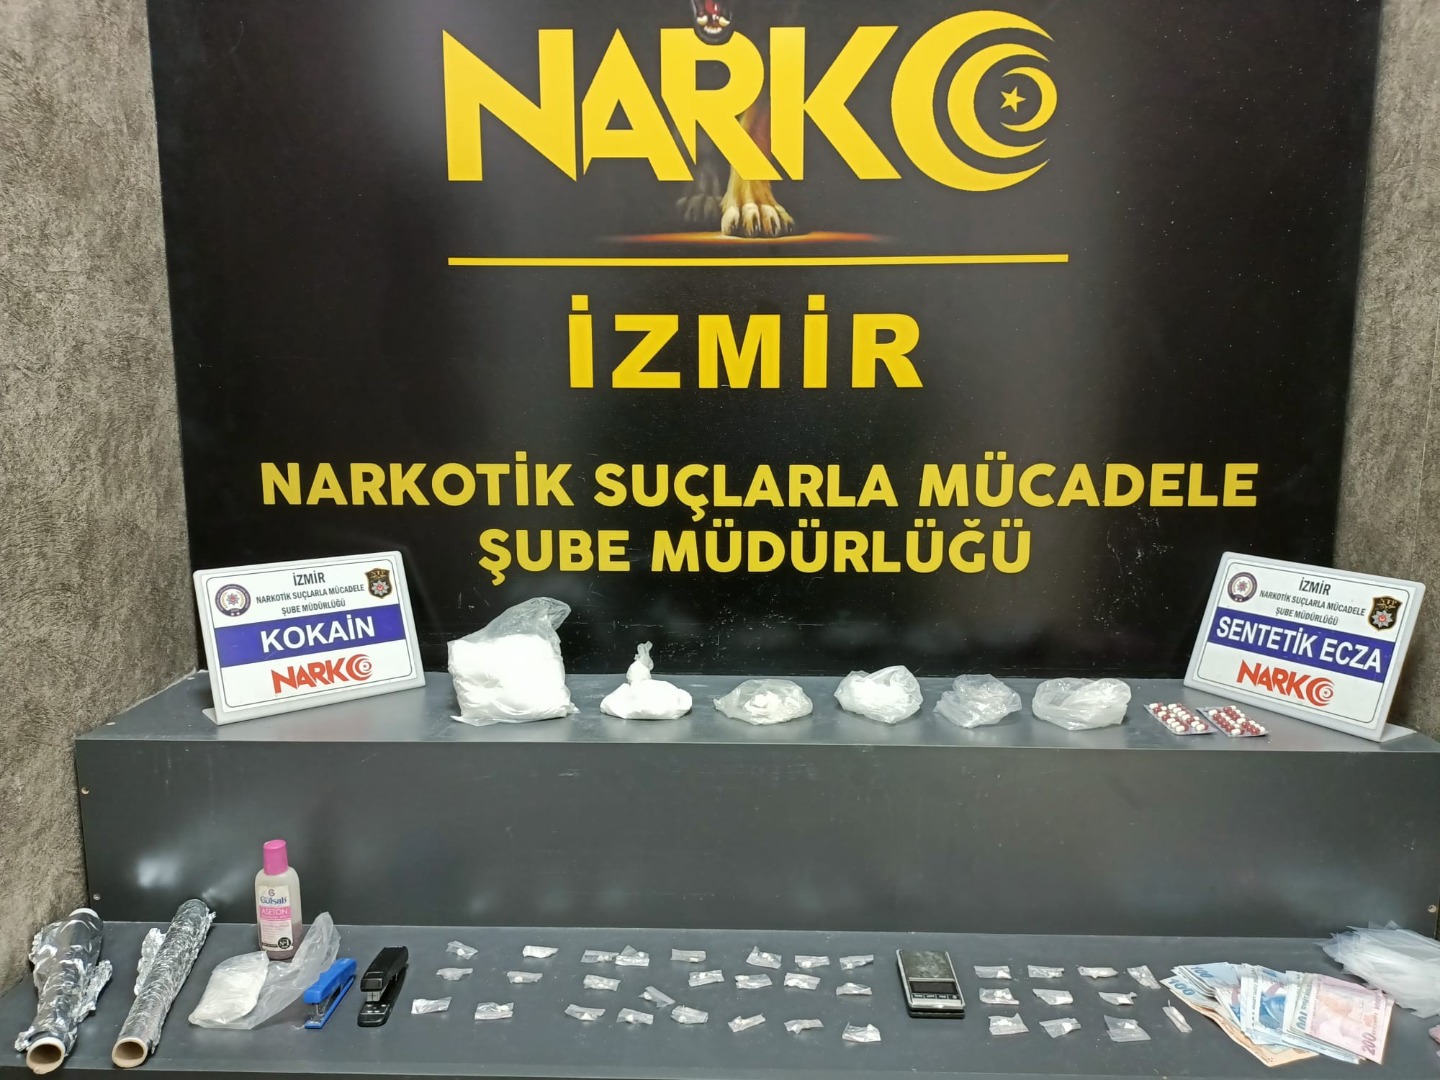 İzmir'de uyuşturucu satıcılarına darbe: 17 tutuklama